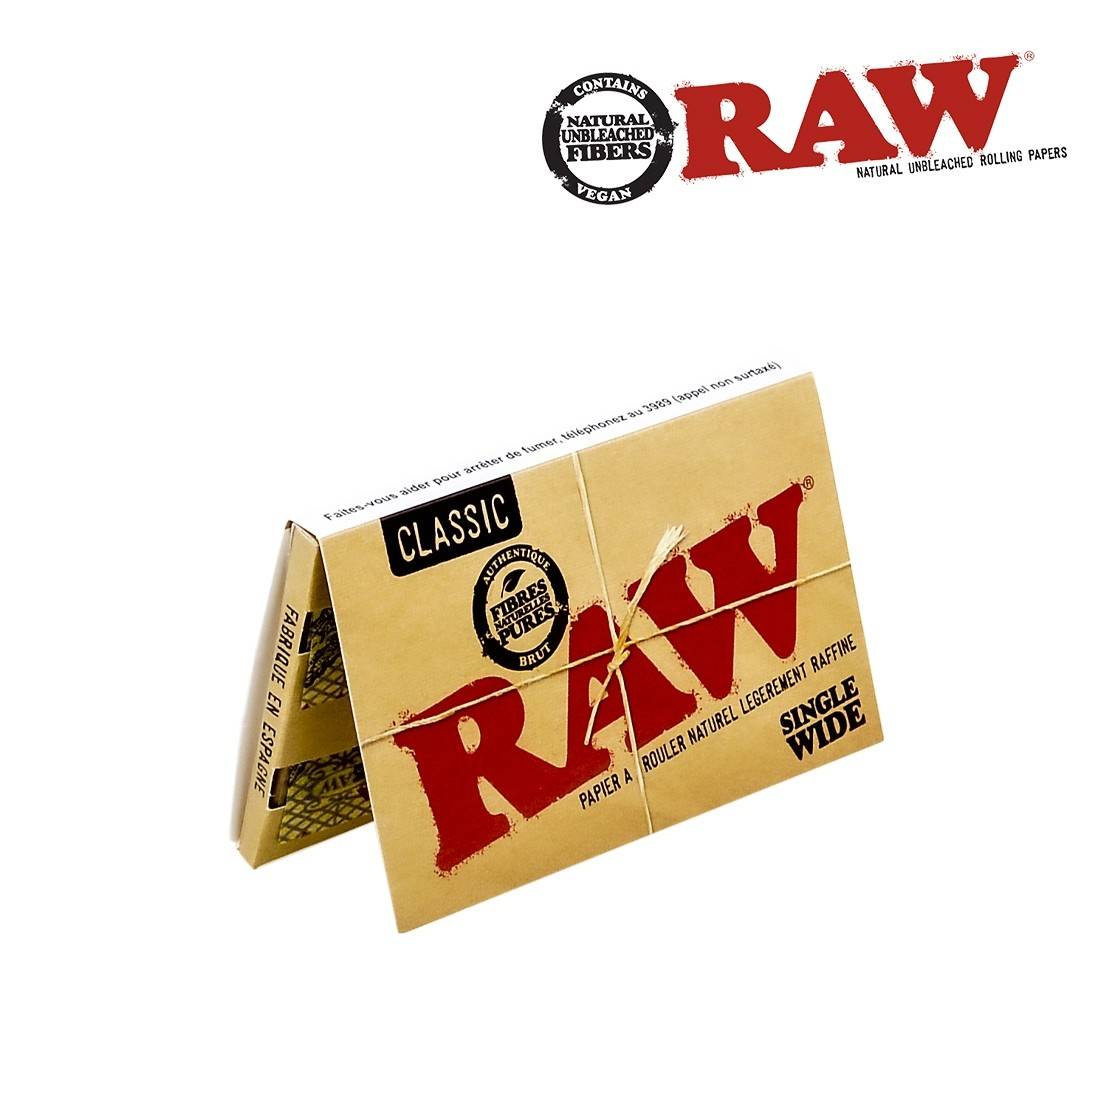 Papier à rouler cigarette Raw Classic Single Wide pas cher